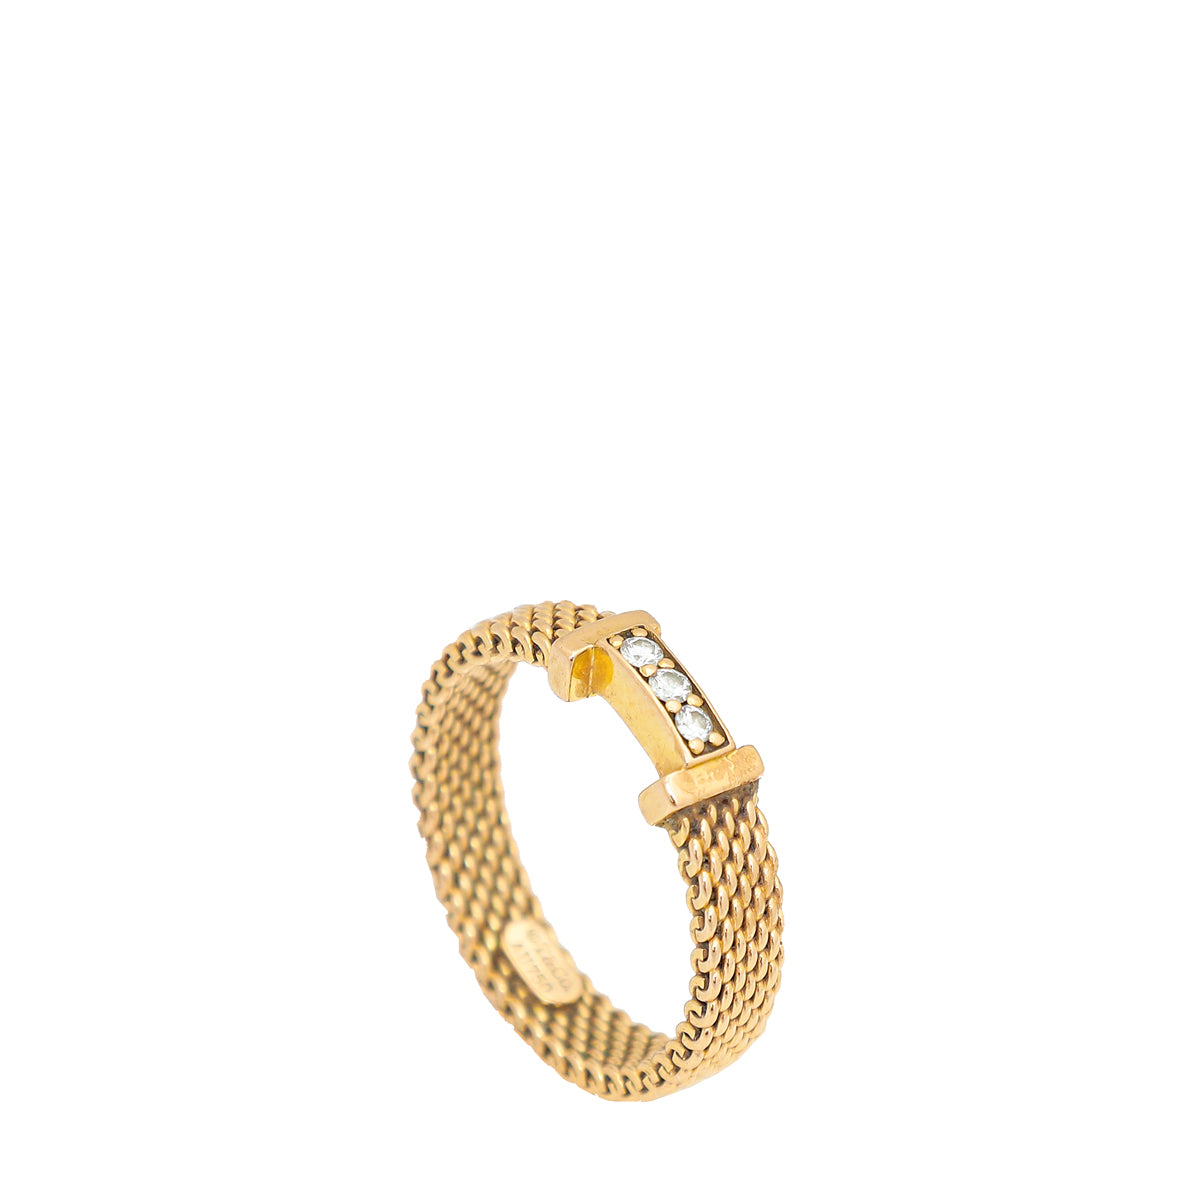 18k Tiffany & Co White Gold 750–Somerset Mesh Diamond X Ring - Size 7.5,  6.6 Gms | eBay